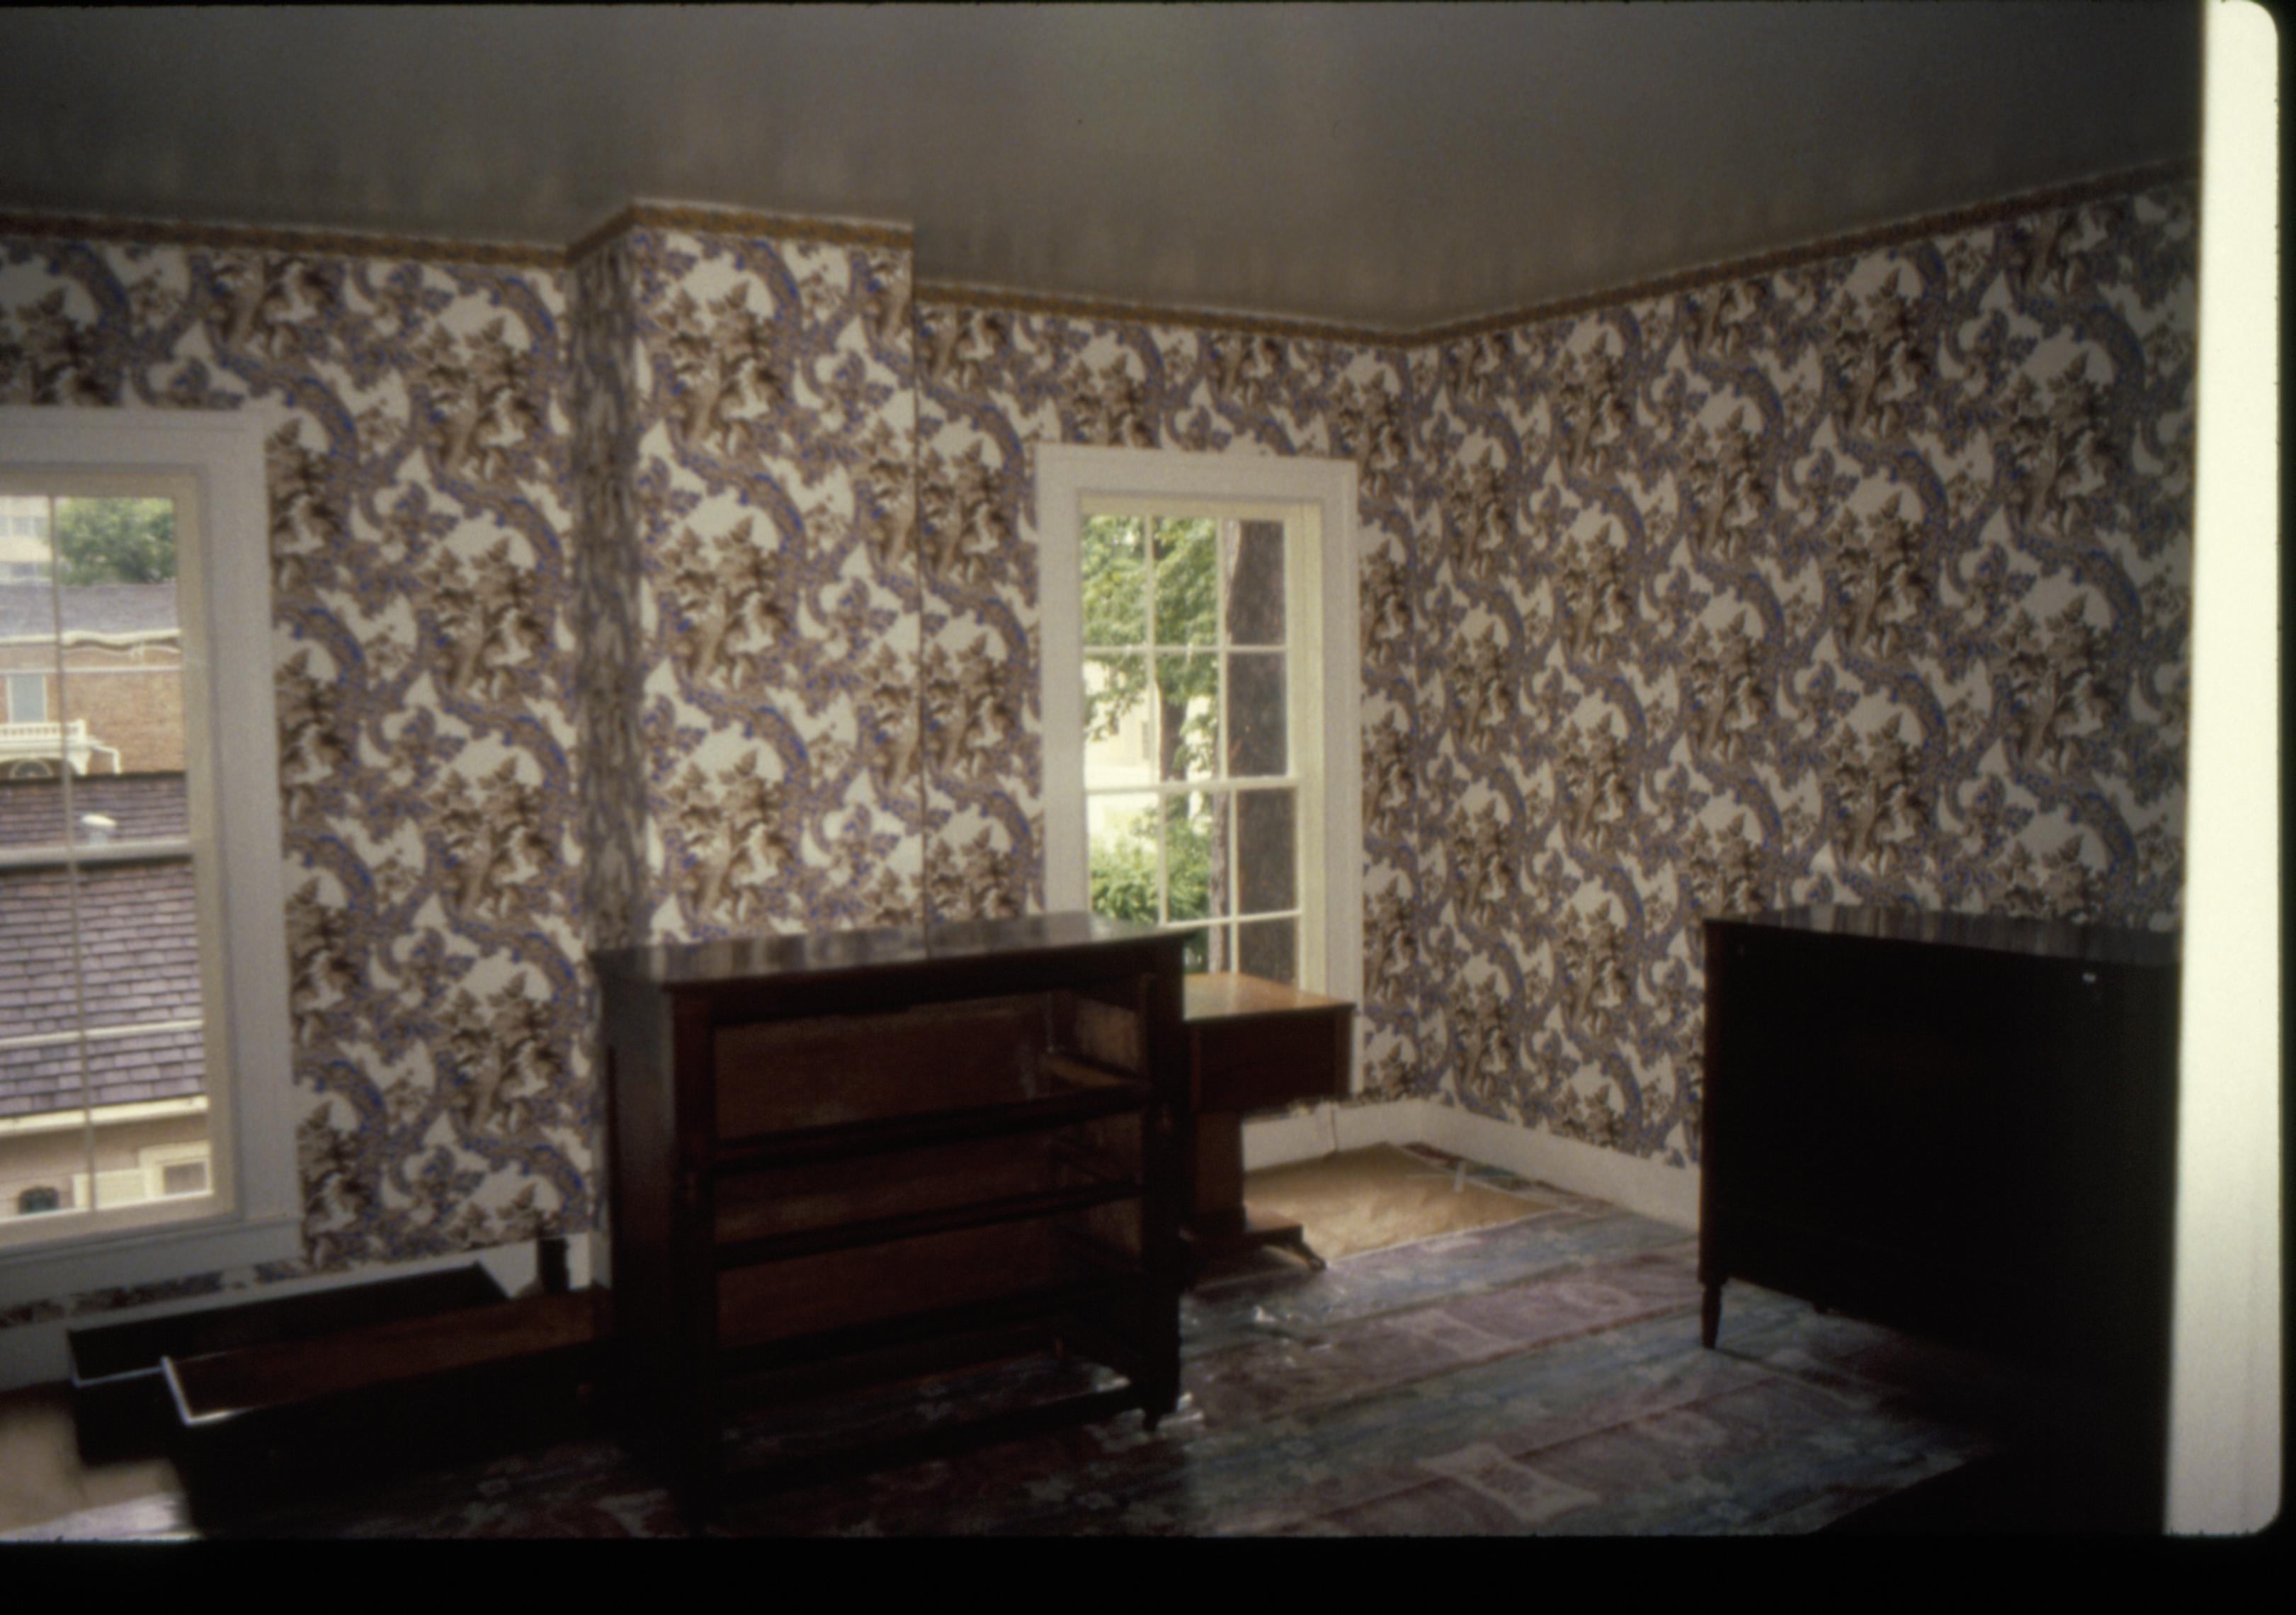 NA Lincoln, Home, restoration, bedroom, mrs.